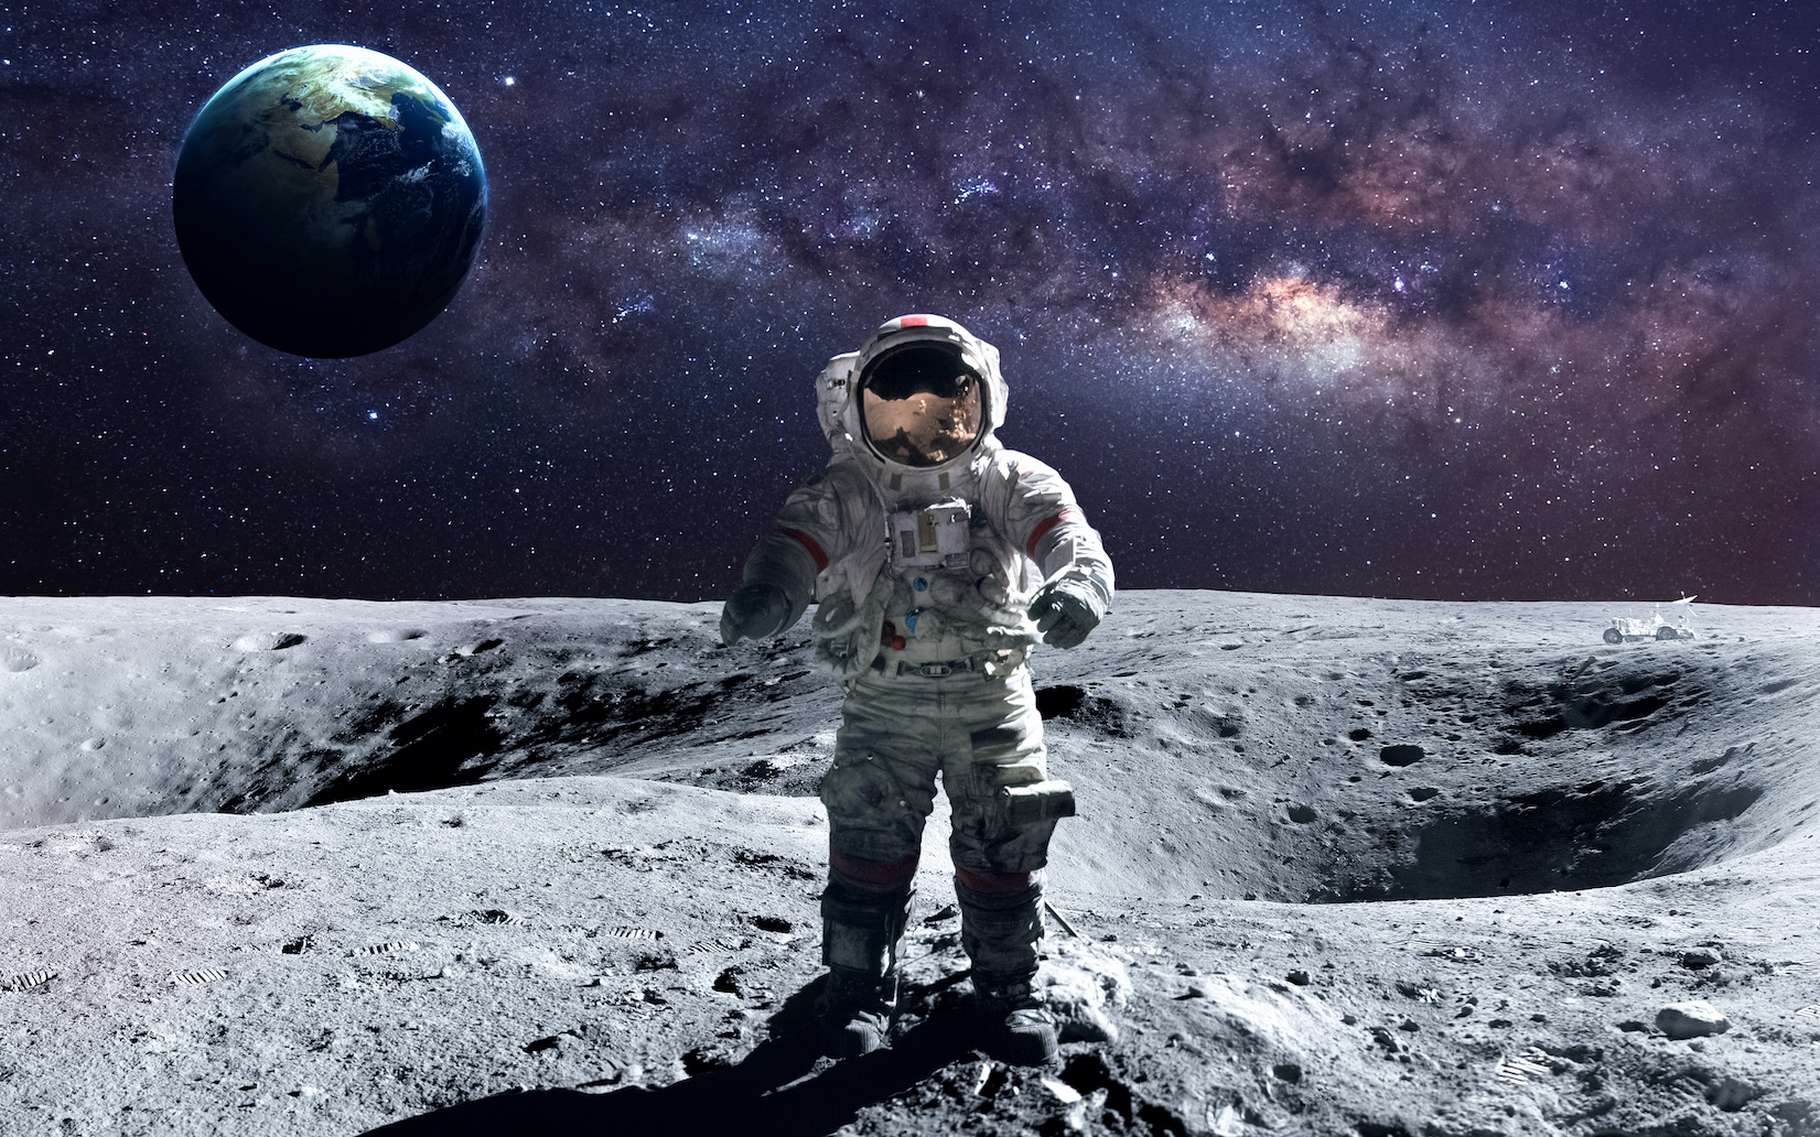 24 milliards d'euros pour retourner sur la Lune